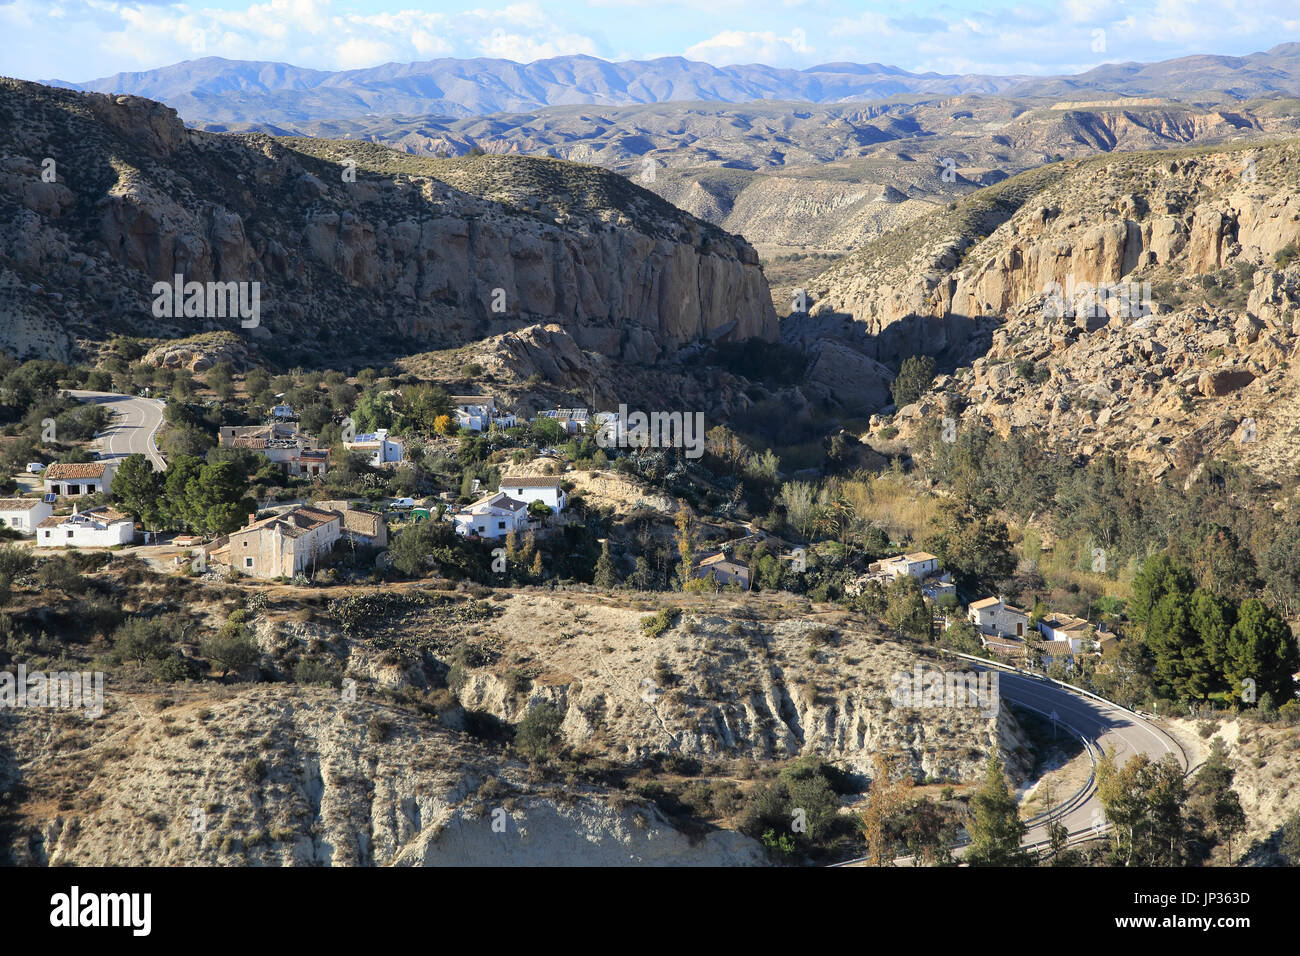 Limestone desert landscape, Los Molinos del Río Aguas, Paraje Natural de Karst en Yesos, Sorbas, Almeria, Spain Stock Photo